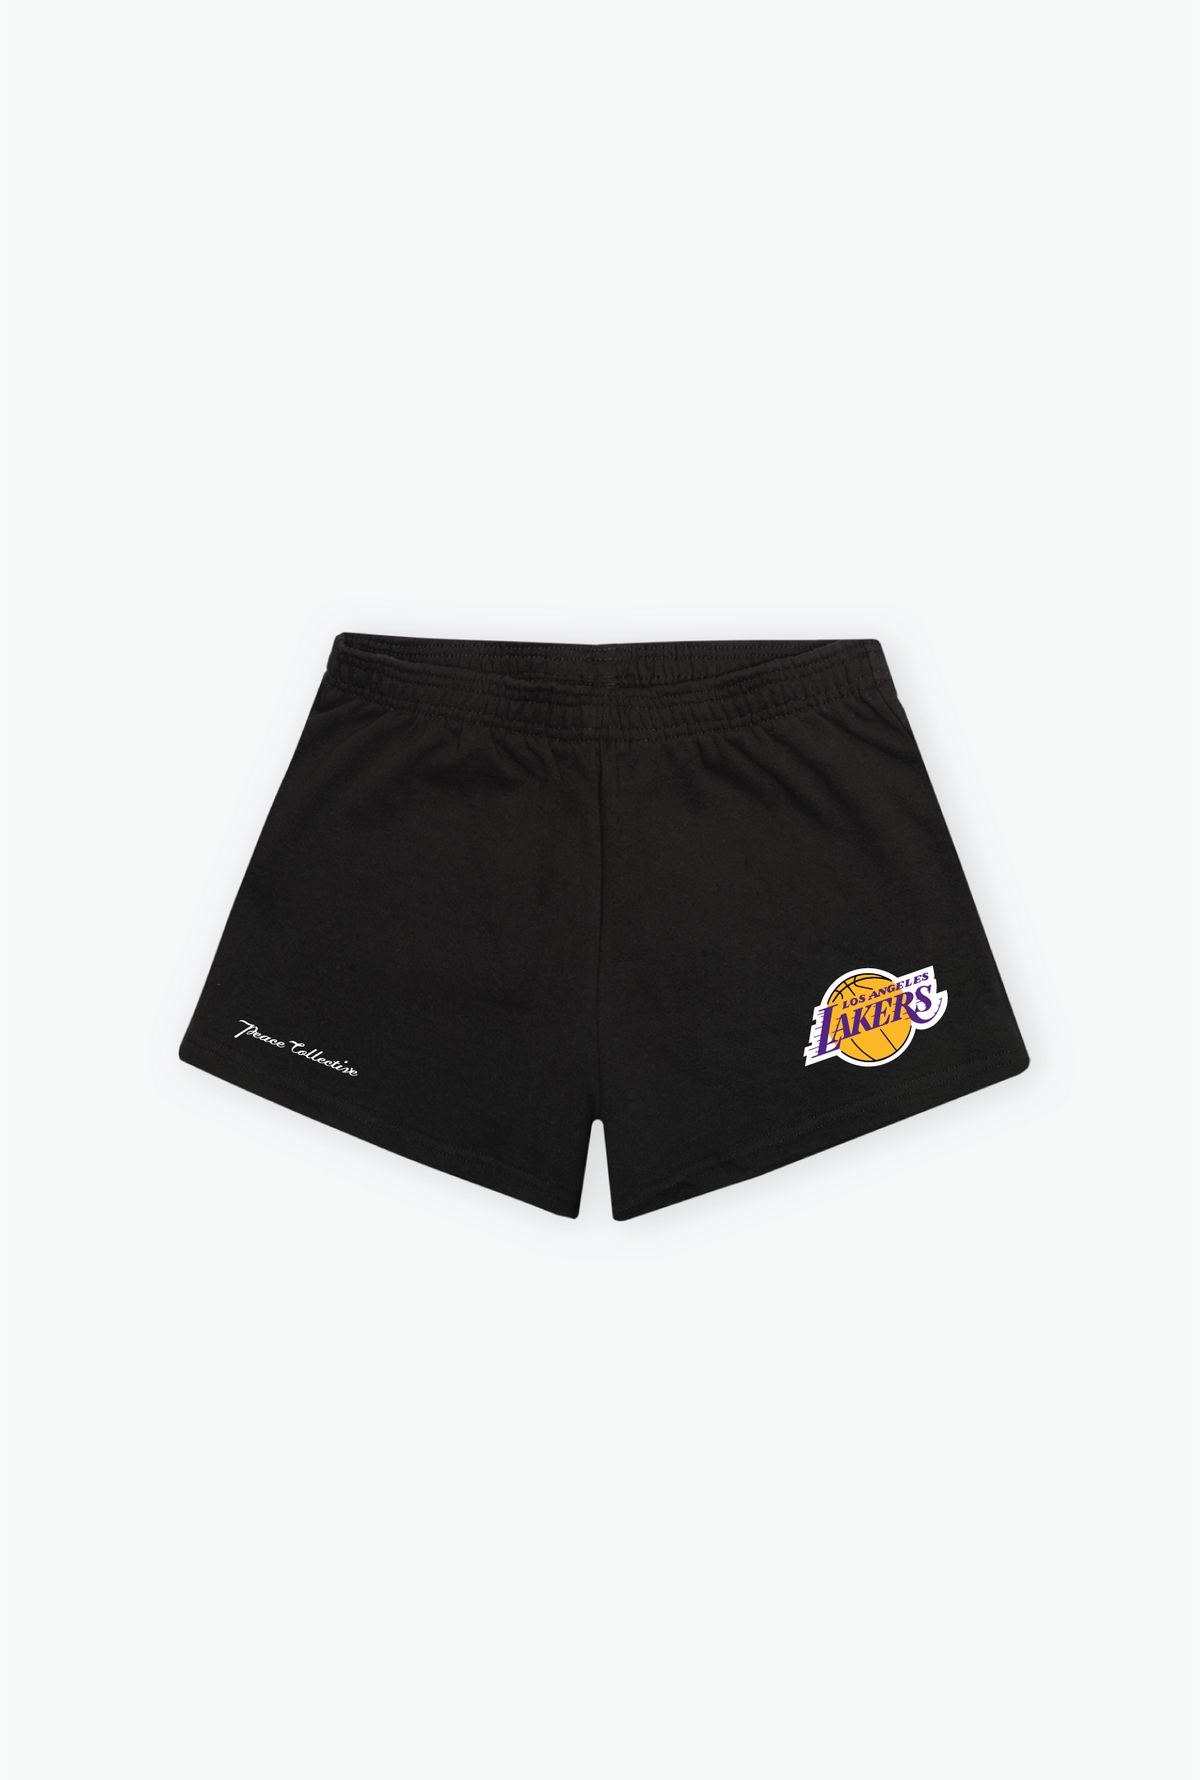 Los Angeles Lakers Women's Fleece Shorts - Black